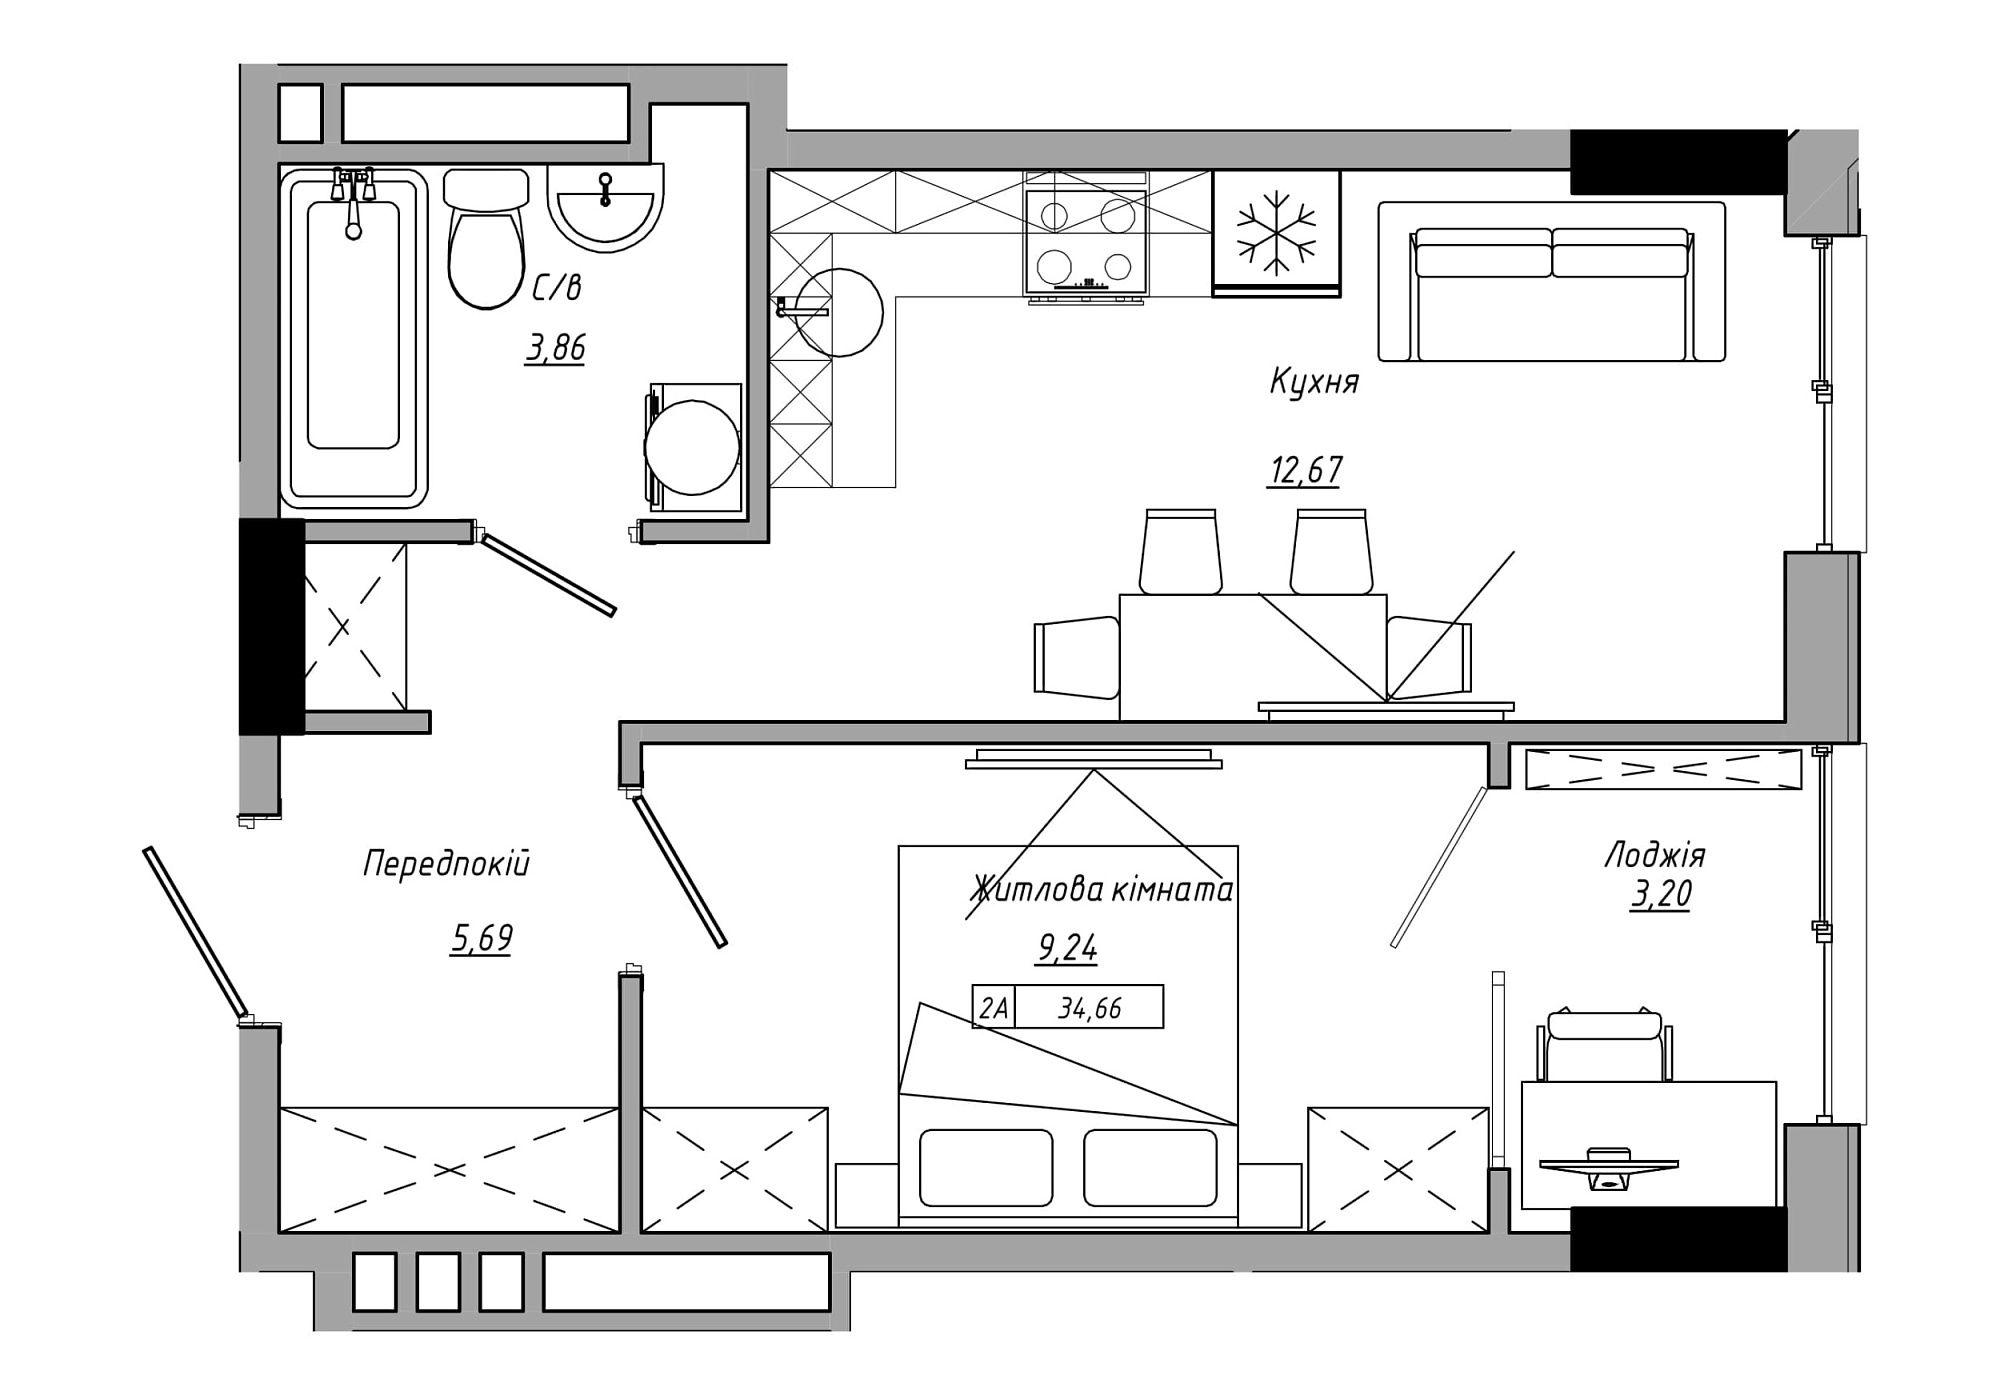 Планування 1-к квартира площею 34.66м2, AB-21-11/00002.